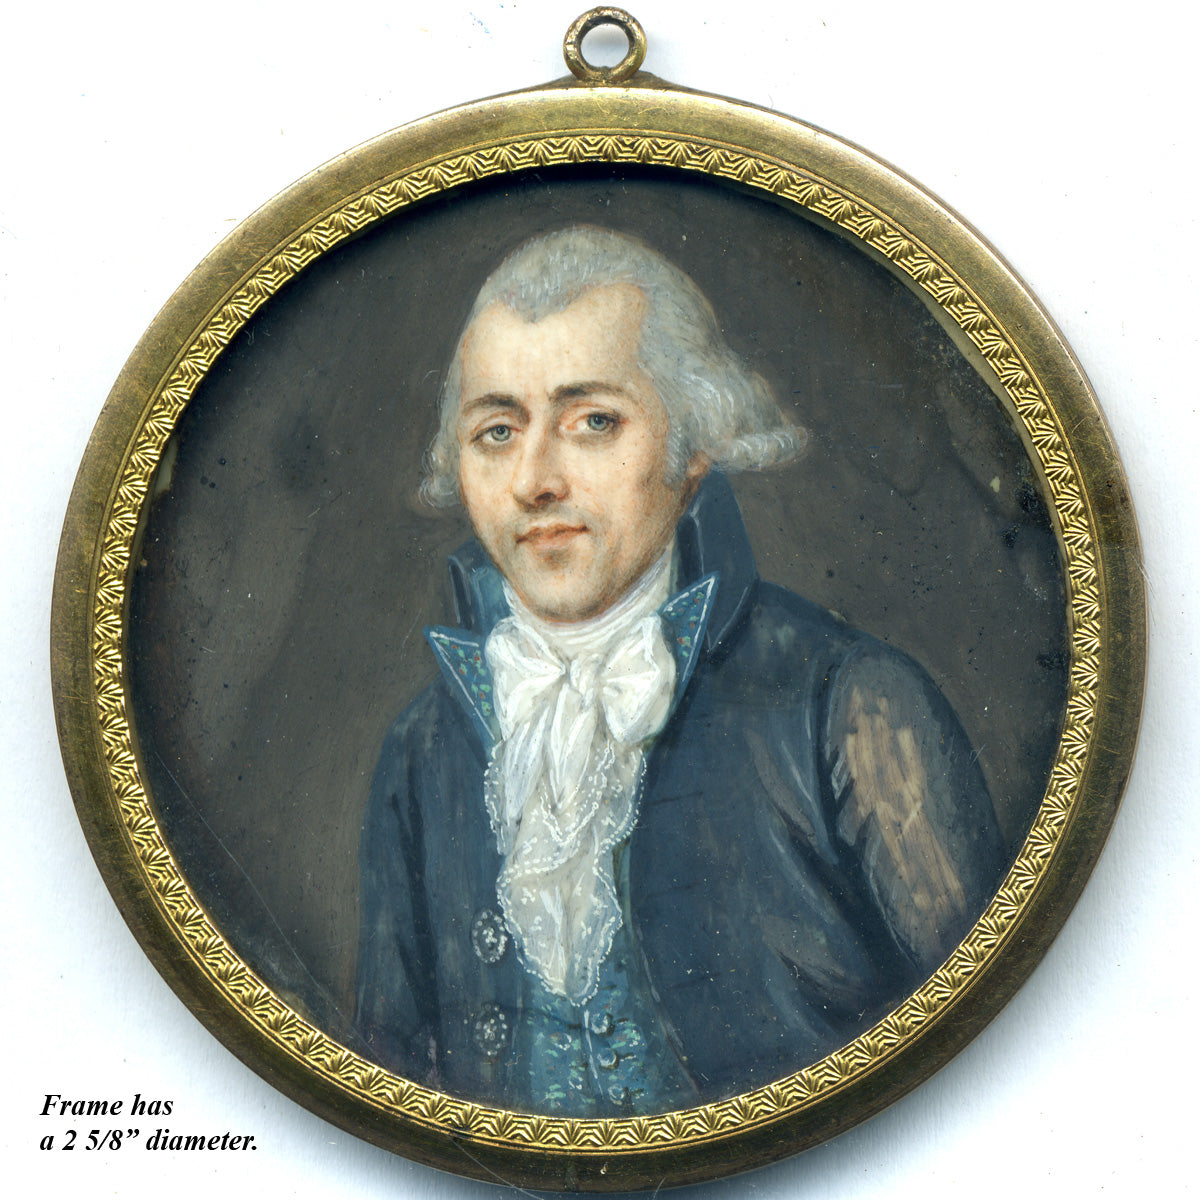 Superb Antique French Revolution Style Portrait Miniature, Gentleman, Powdered Hair